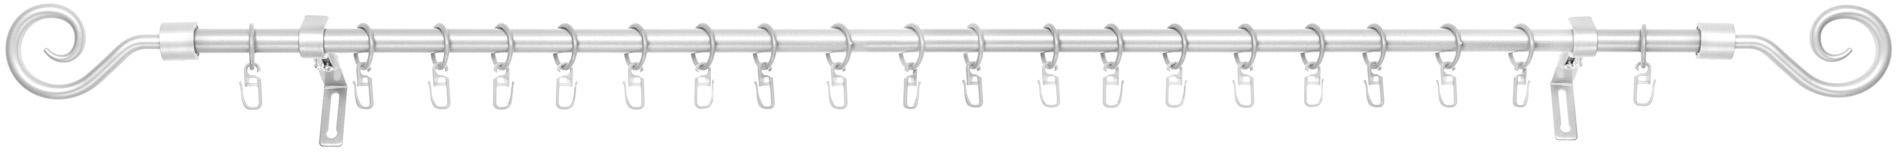 Gardinenstange Kringel, LICHTBLICK ORIGINAL, Ø 16 mm, 1-läufig, Fixmaß, mit Bohren, verschraubt, Metall